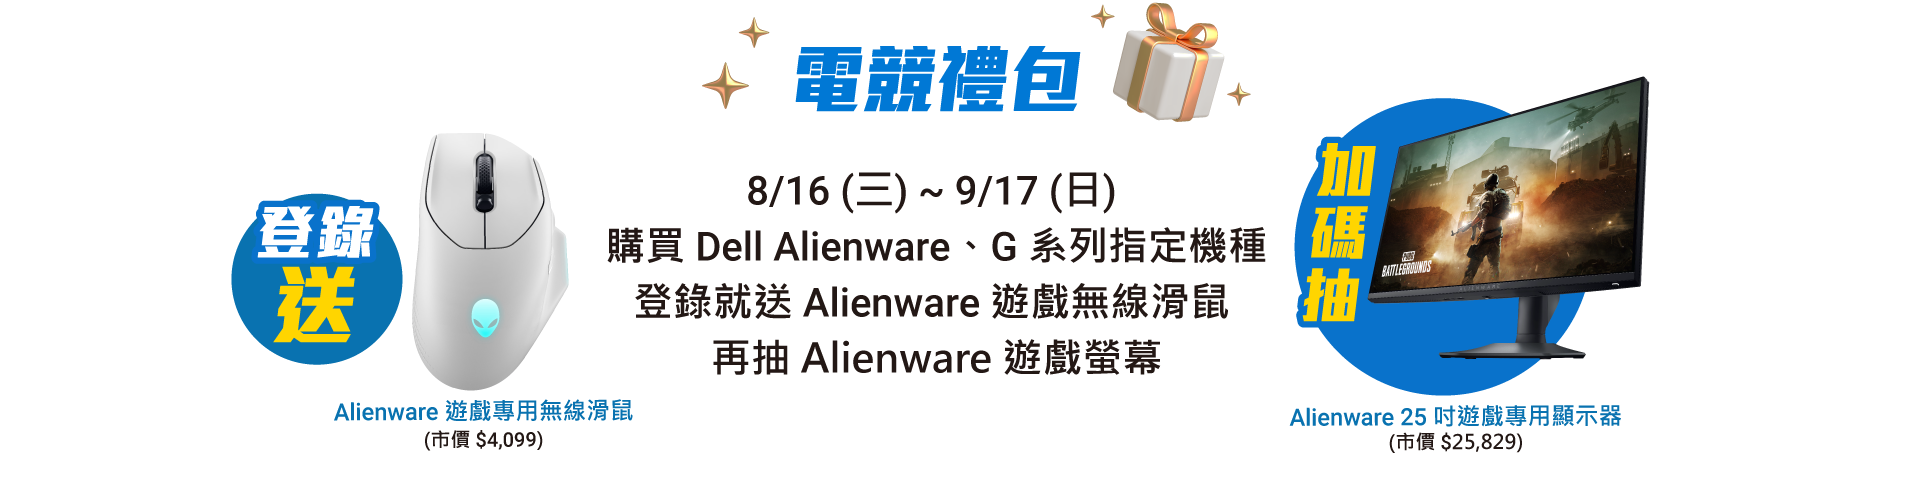 電競禮包 8/16(三) ~ 9/17(日) 購買 Dell Alienware、G 系列指定機種 登錄就送 Alienware 電競滑鼠 再抽 Alienware 遊戲螢幕